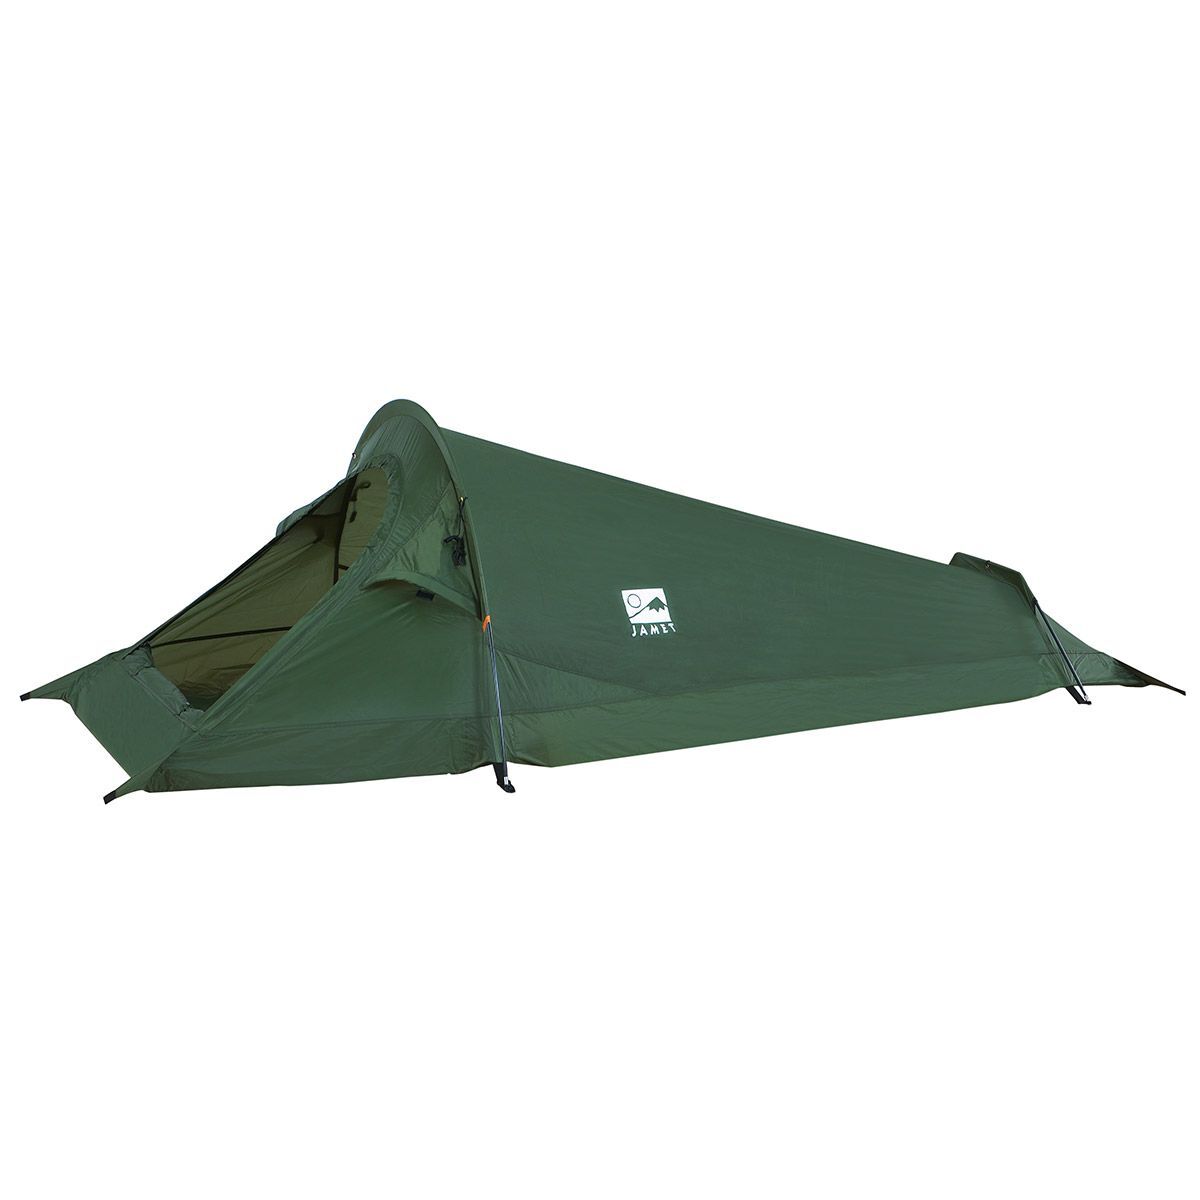 Jamet Shelter - Tent